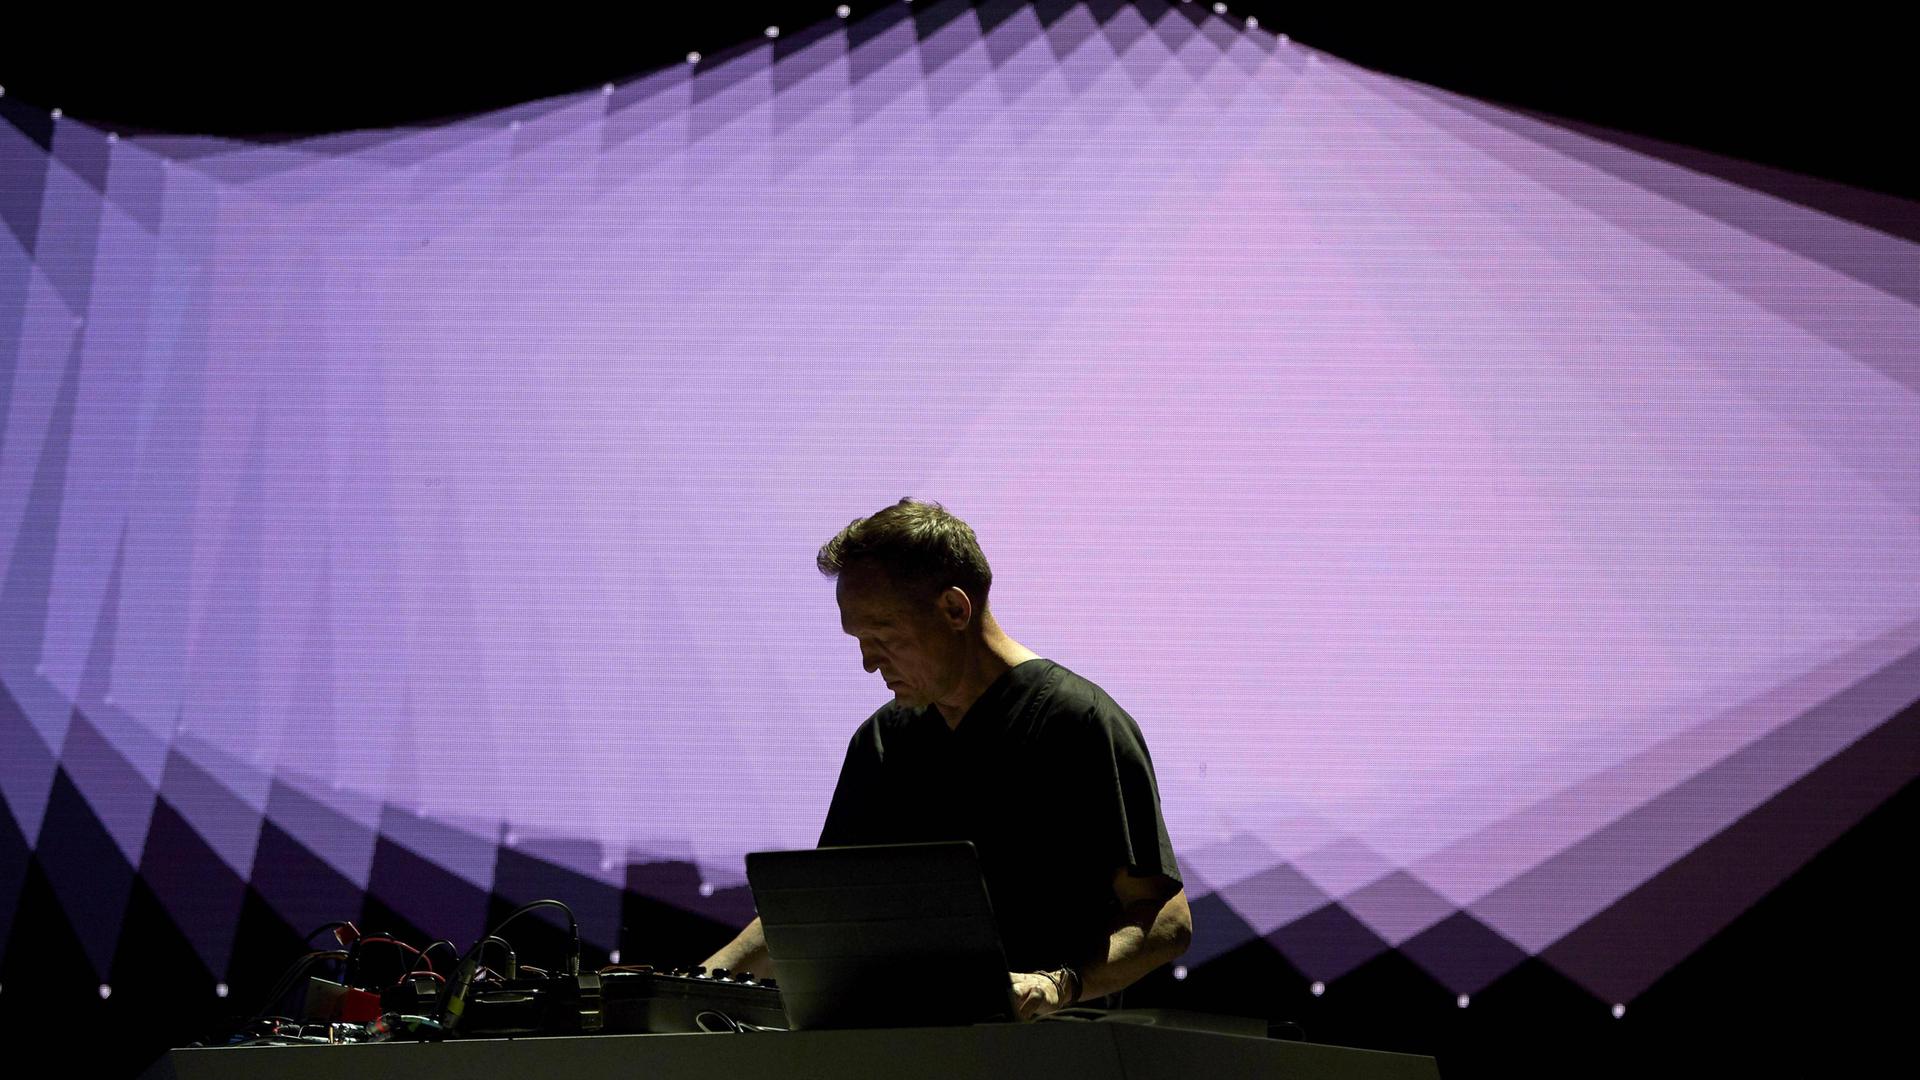 Ein Mann steht auf einer Bühne vor einem Laptop, im Hintergrund werden überlappende geometrische Formen in Lila projiziert.